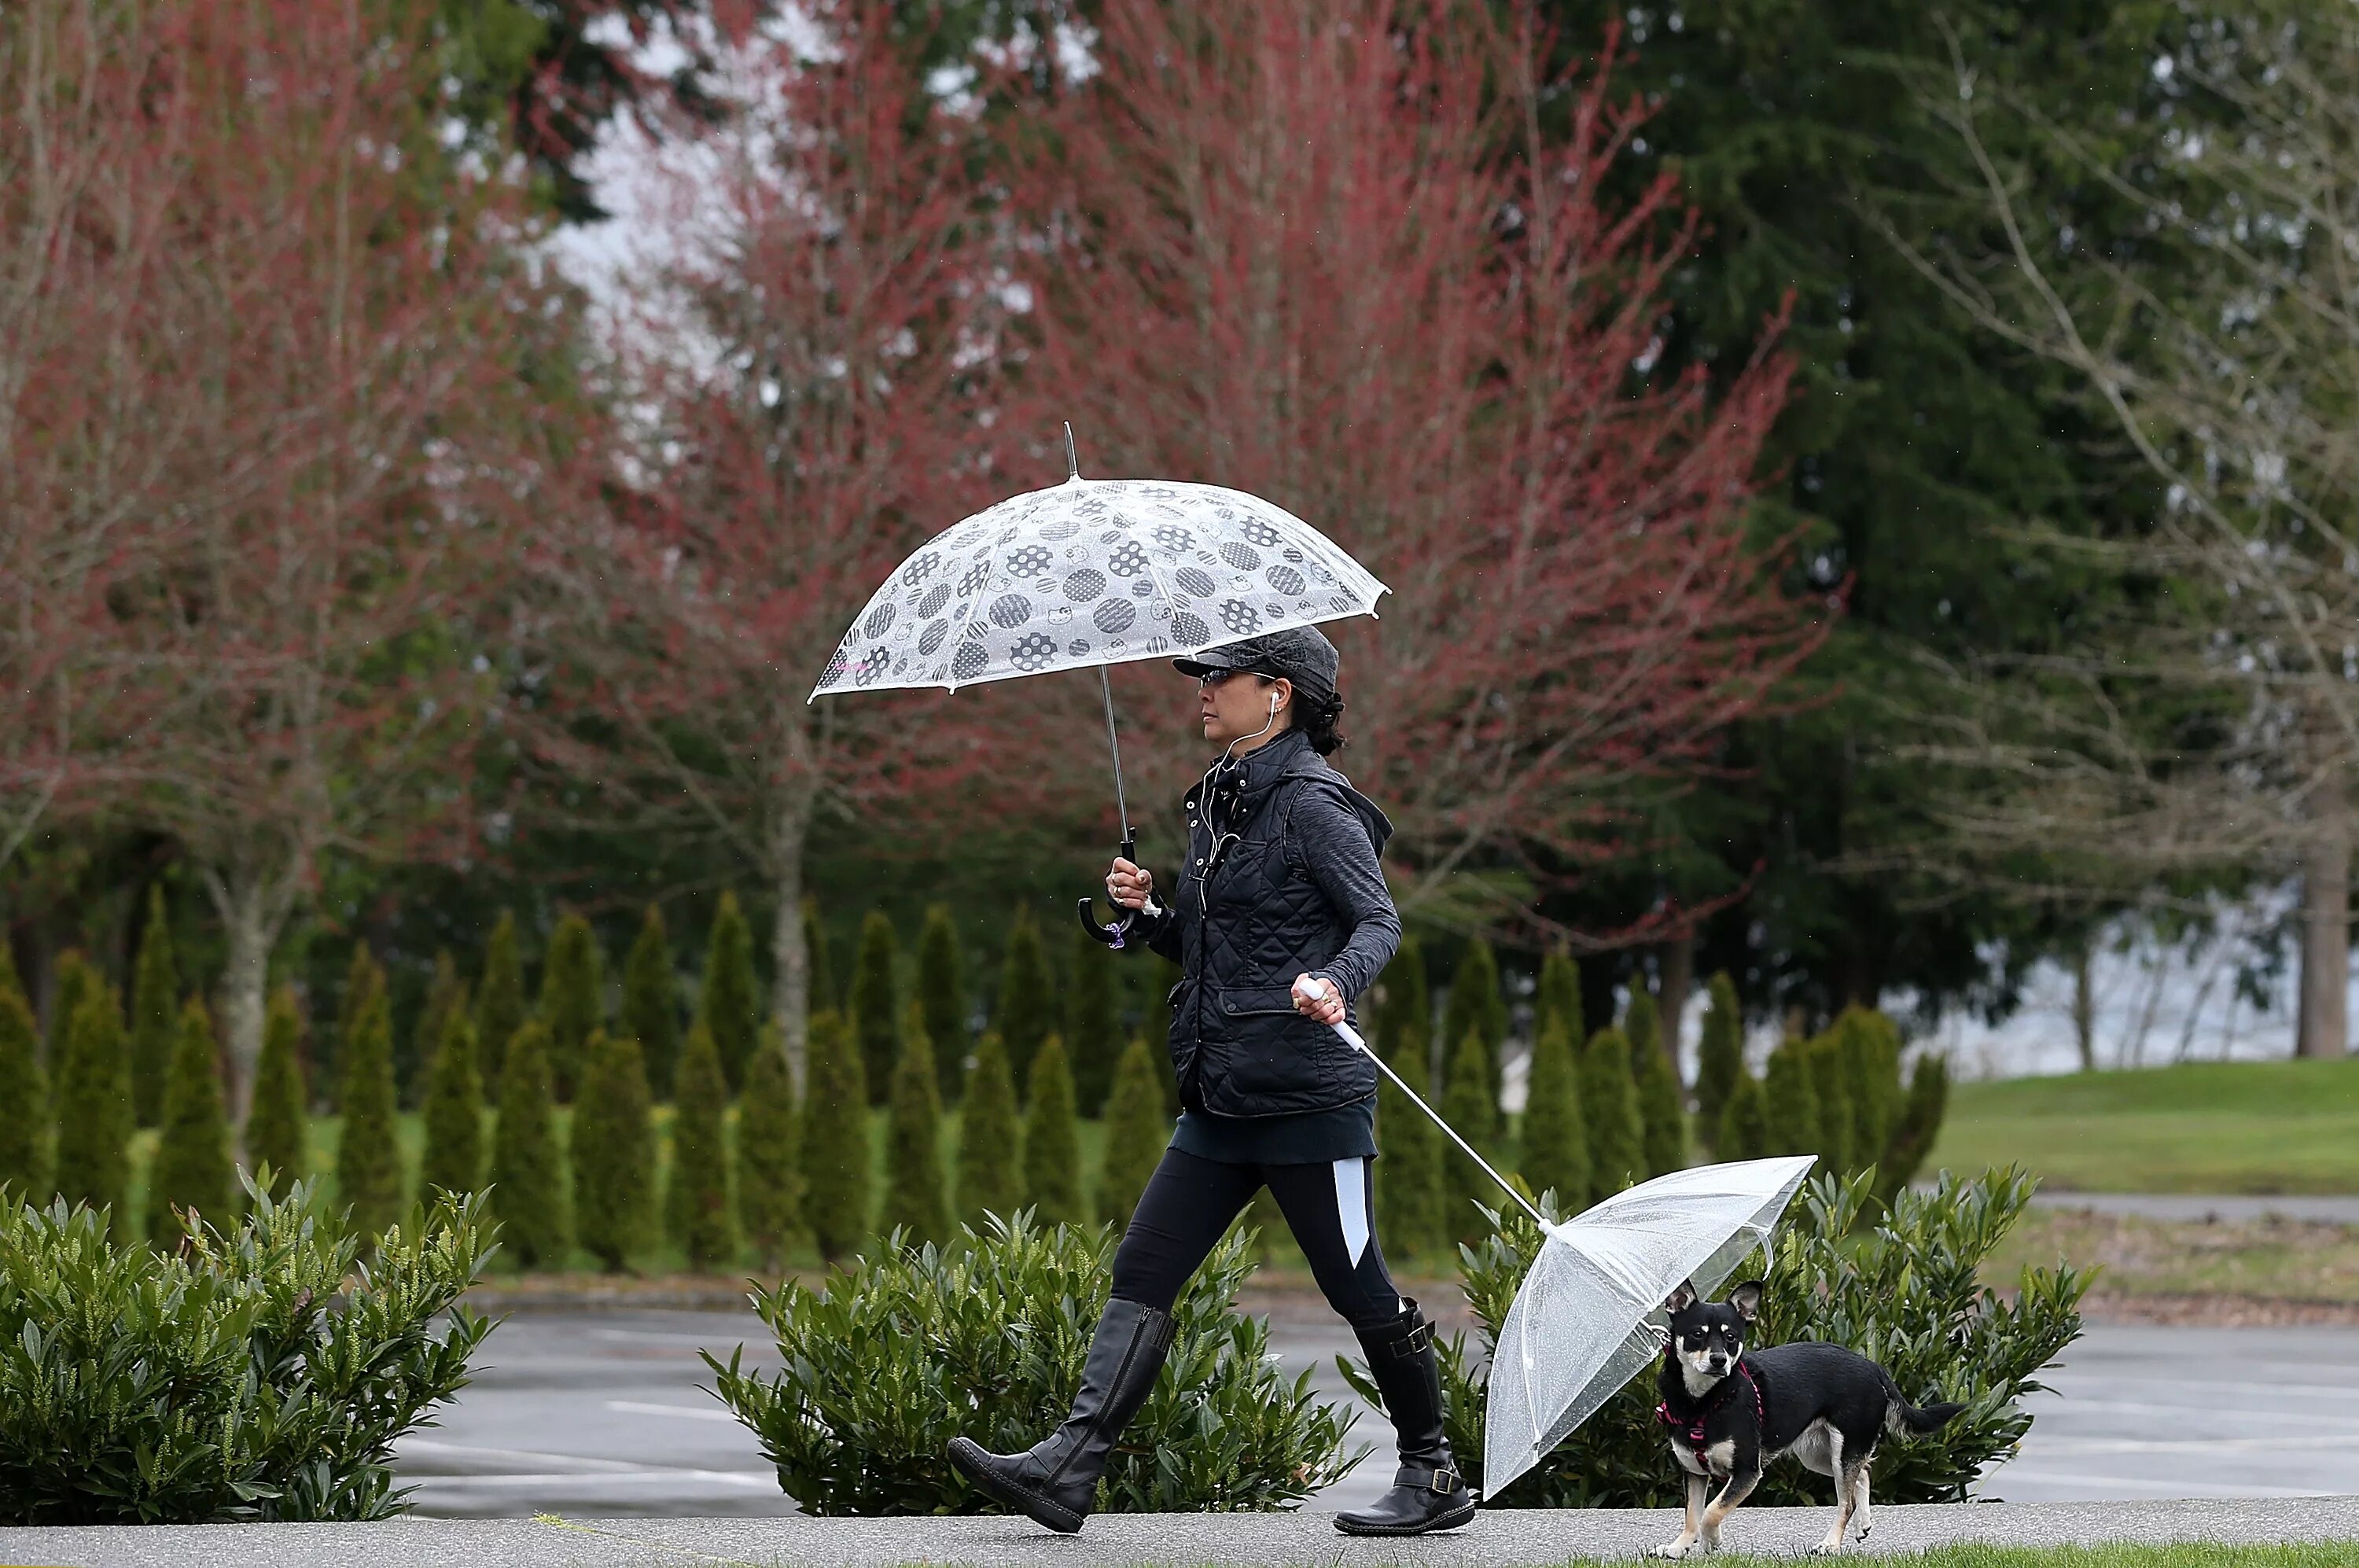 Дождевой зонт. Зонтик под дождем. Весенний зонтик. Фотосессия с зонтиком. Одолжил ей зонтик